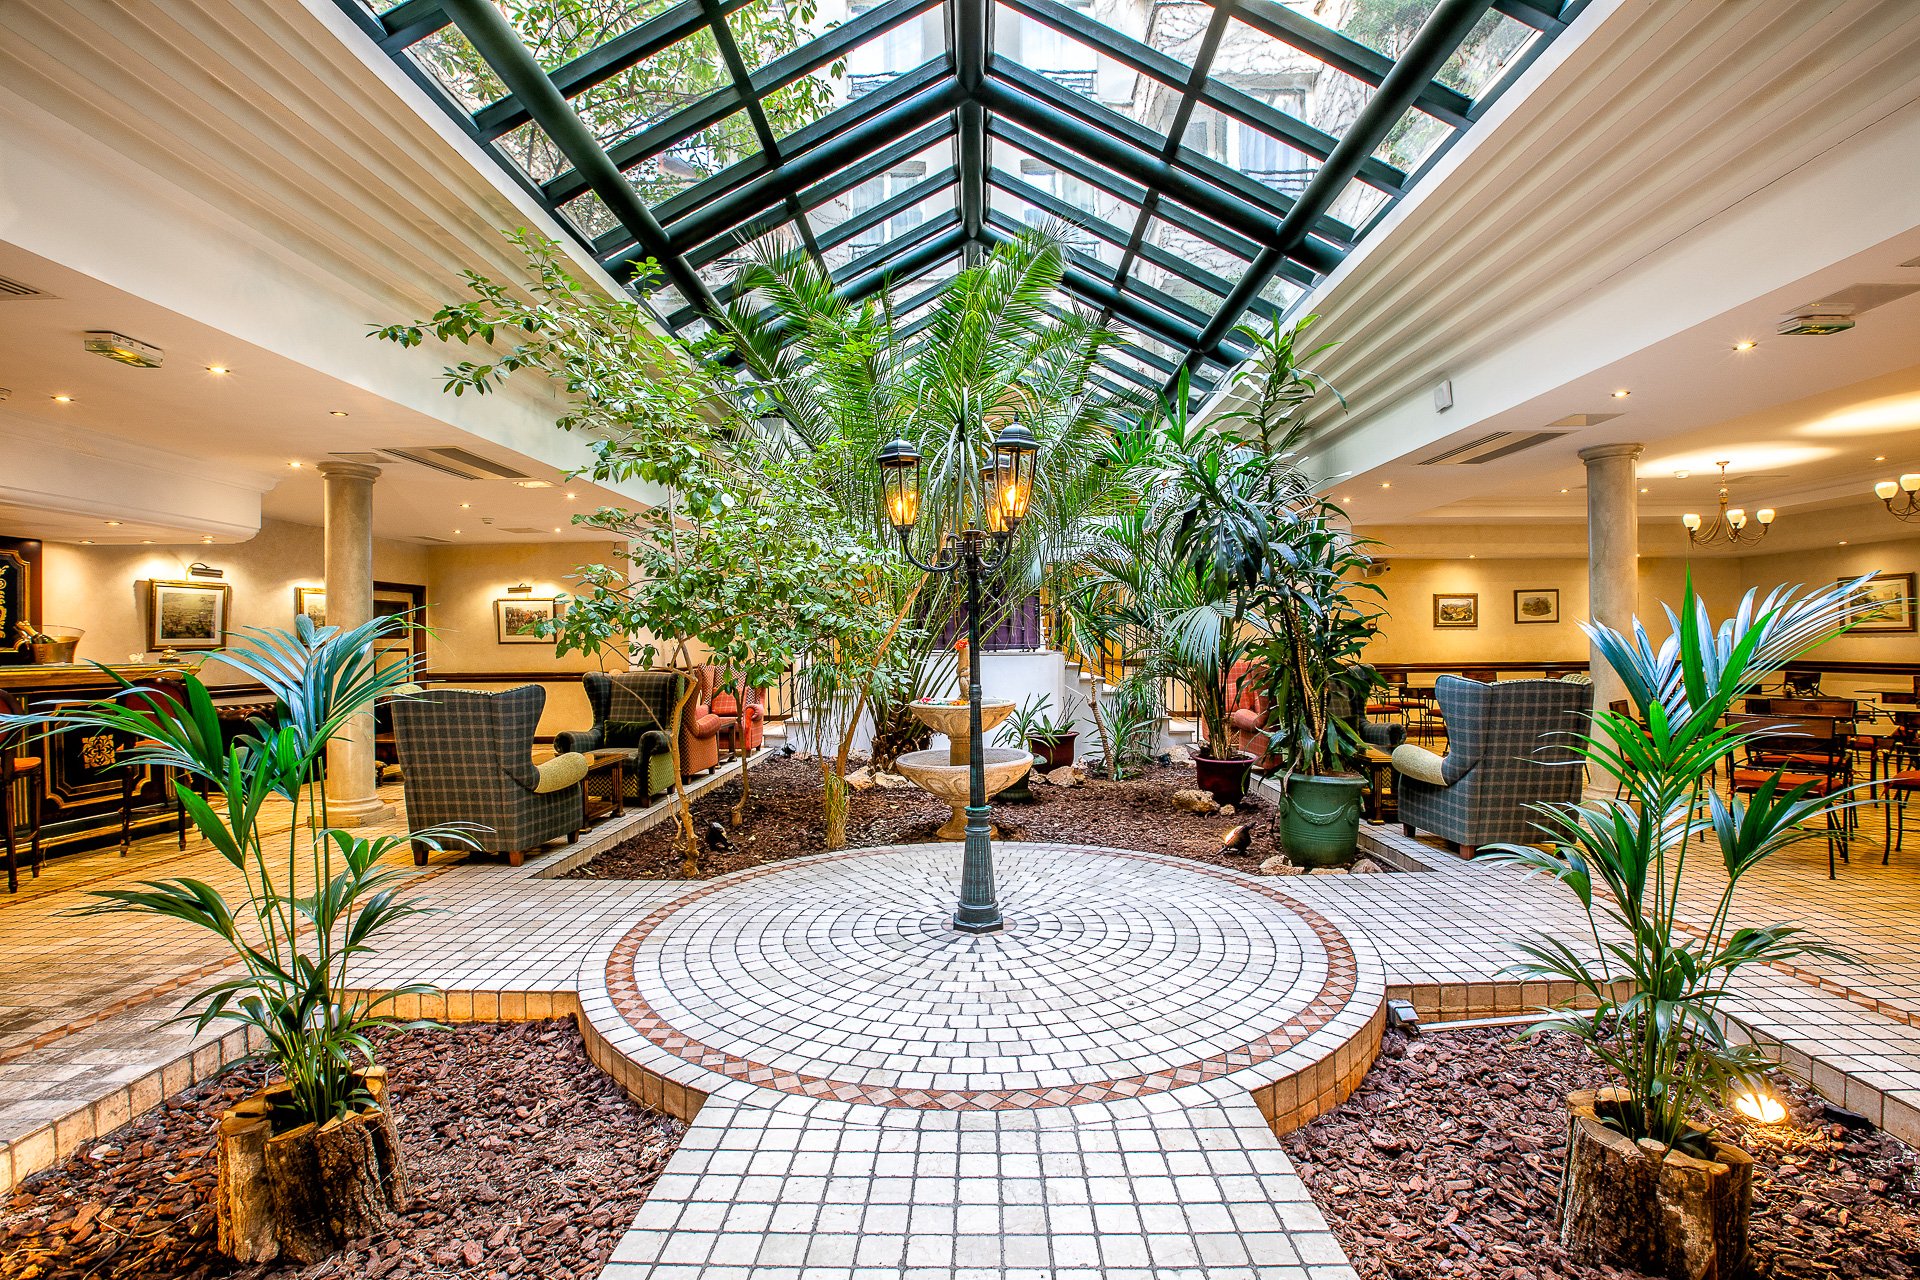 23/Lobby/Villa Beaumarchais - Hotel Paris Marais - Hotel 4 etoiles avec pation privatisable - Jardin avec Verrere pour photoshooting.jpg